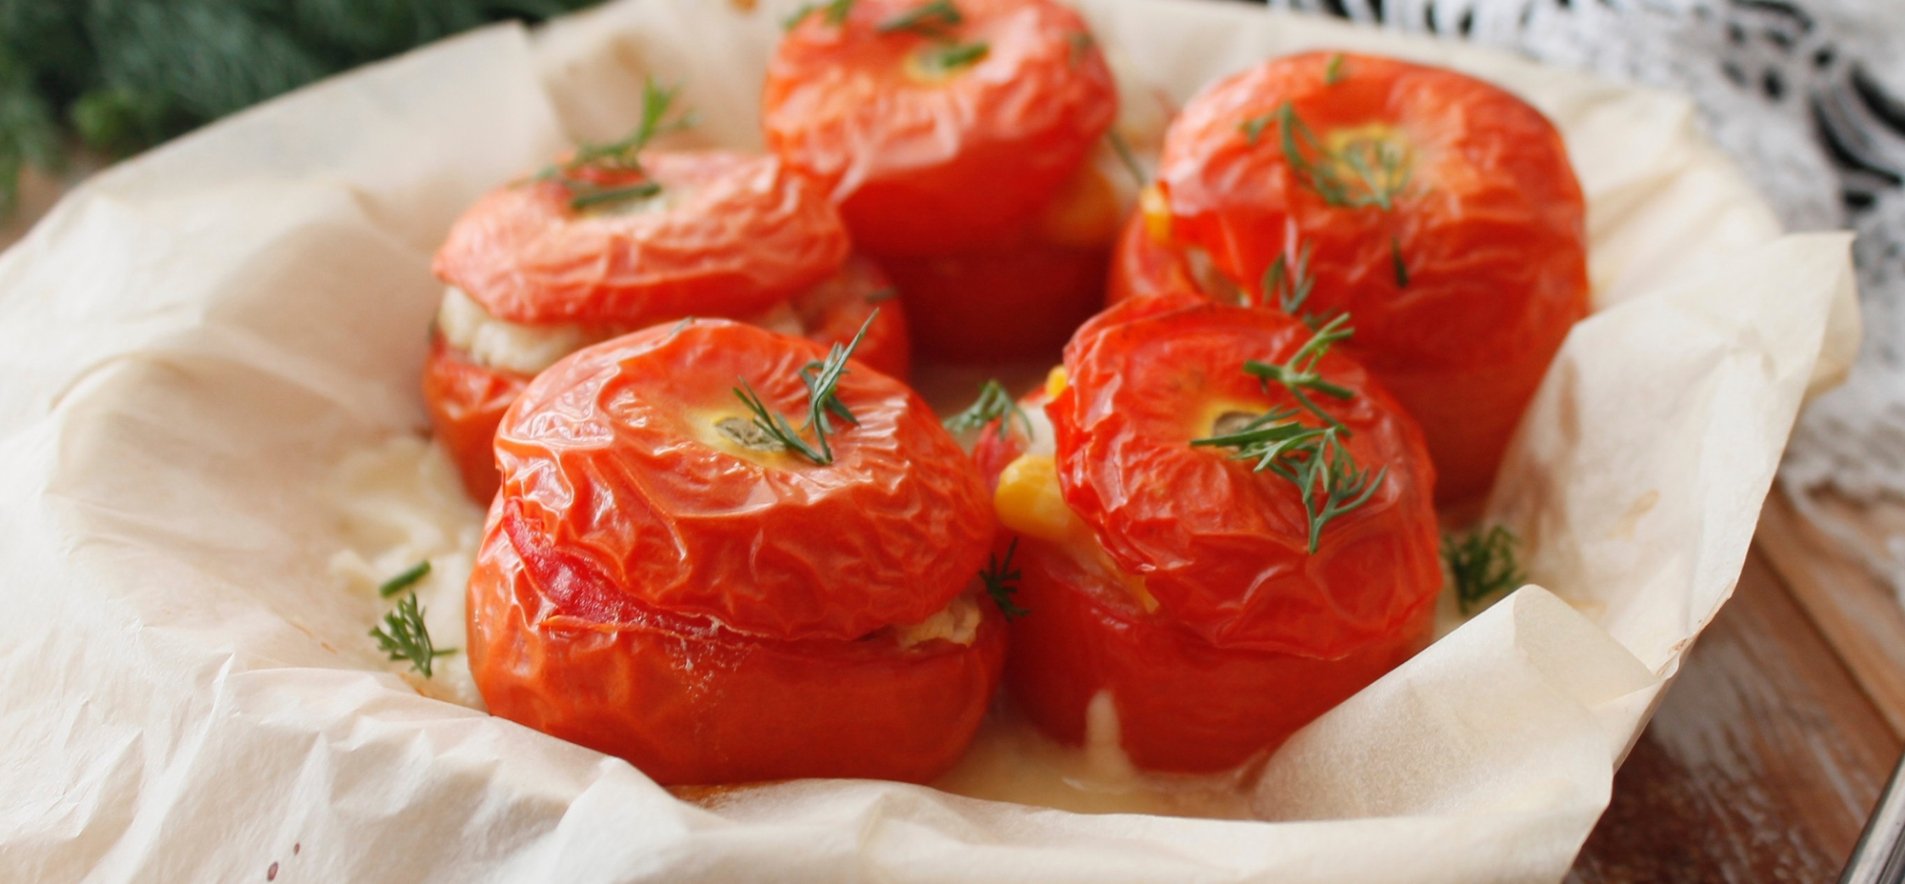 Чтобы приготовить фаршированные помидоры в духовке, нужны: